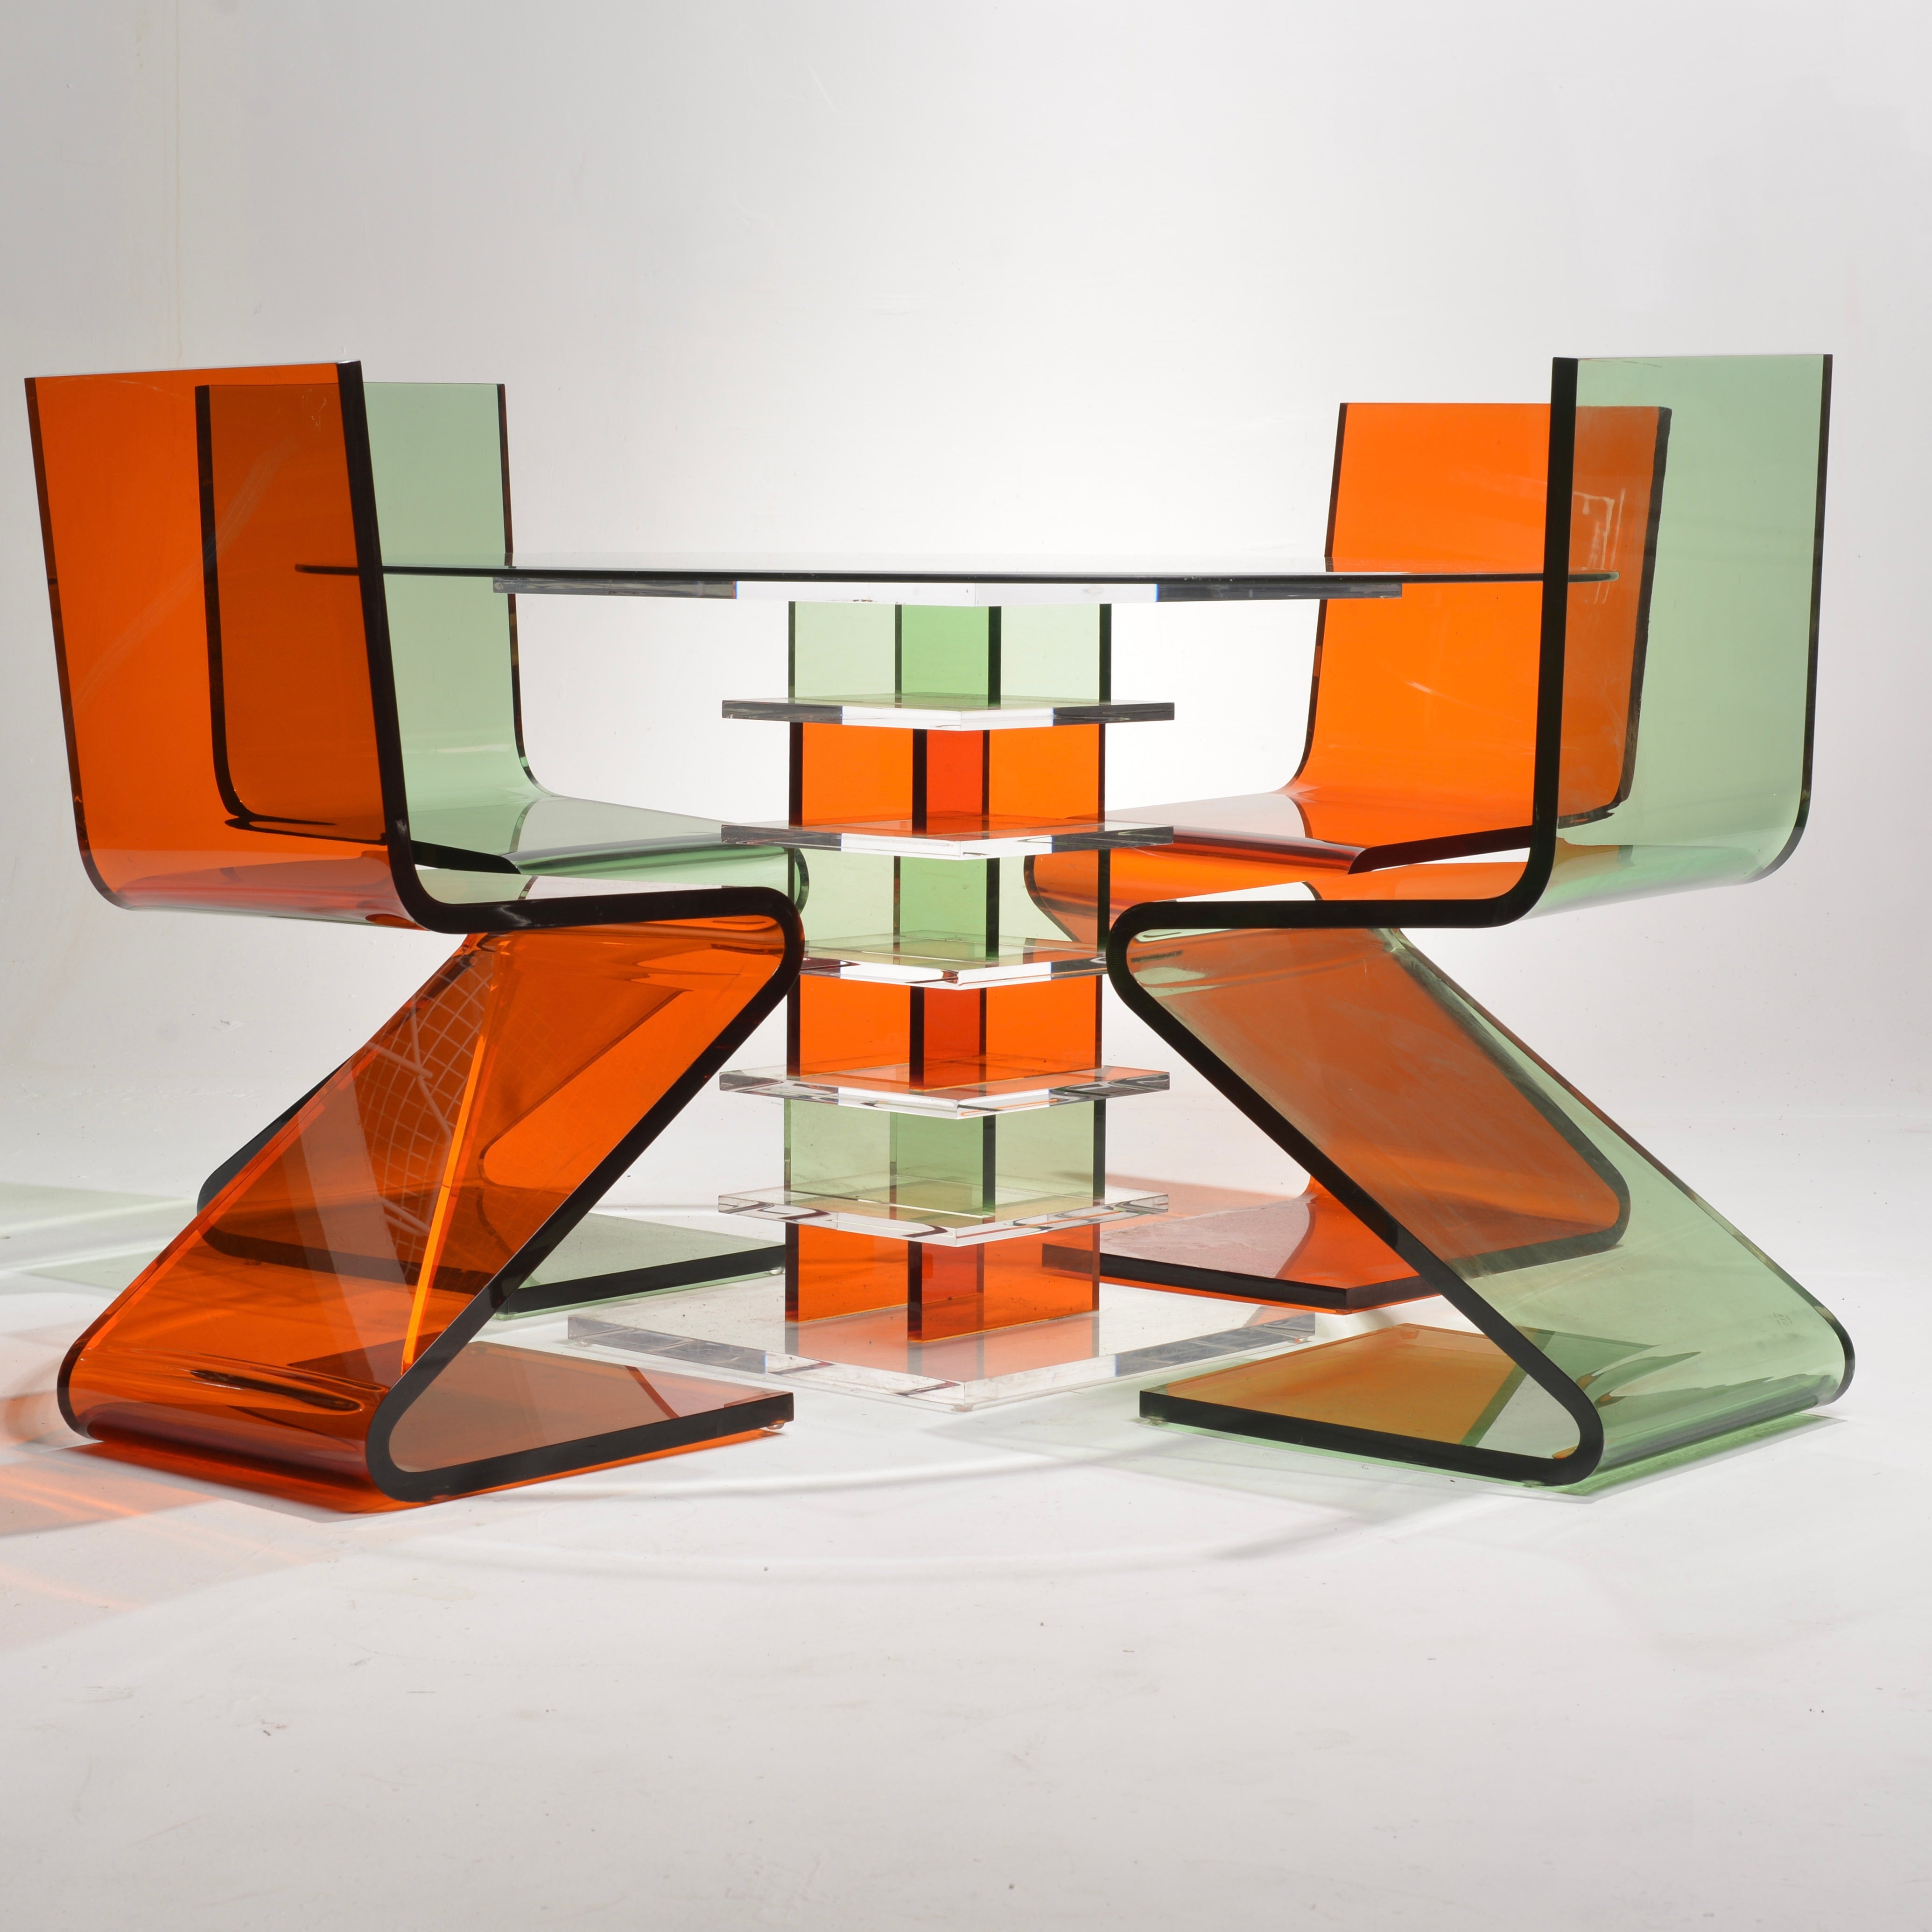 Der von Shlomi Haziza für H Studio entworfene Vintage Lucite Z Tisch und die Z Stühle verkörpern zeitlose Eleganz mit einer modernen Note. Inspiriert von klaren Linien und der Anziehungskraft von Lucit, verbinden diese Stücke Retro-Charme mit